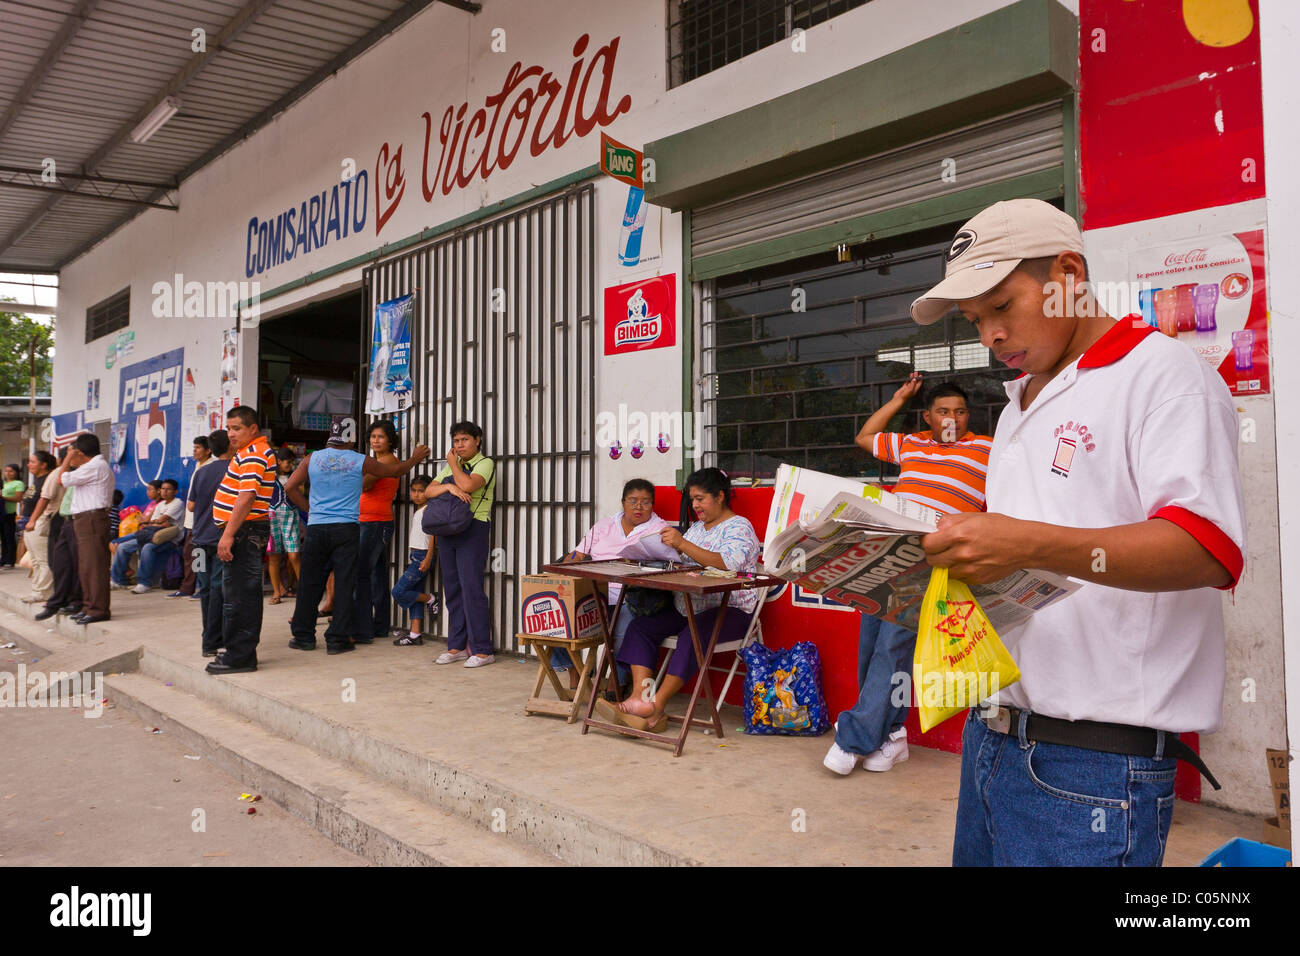 EL VALLE de ANTON, PANAMA - people in front of store. Stock Photo